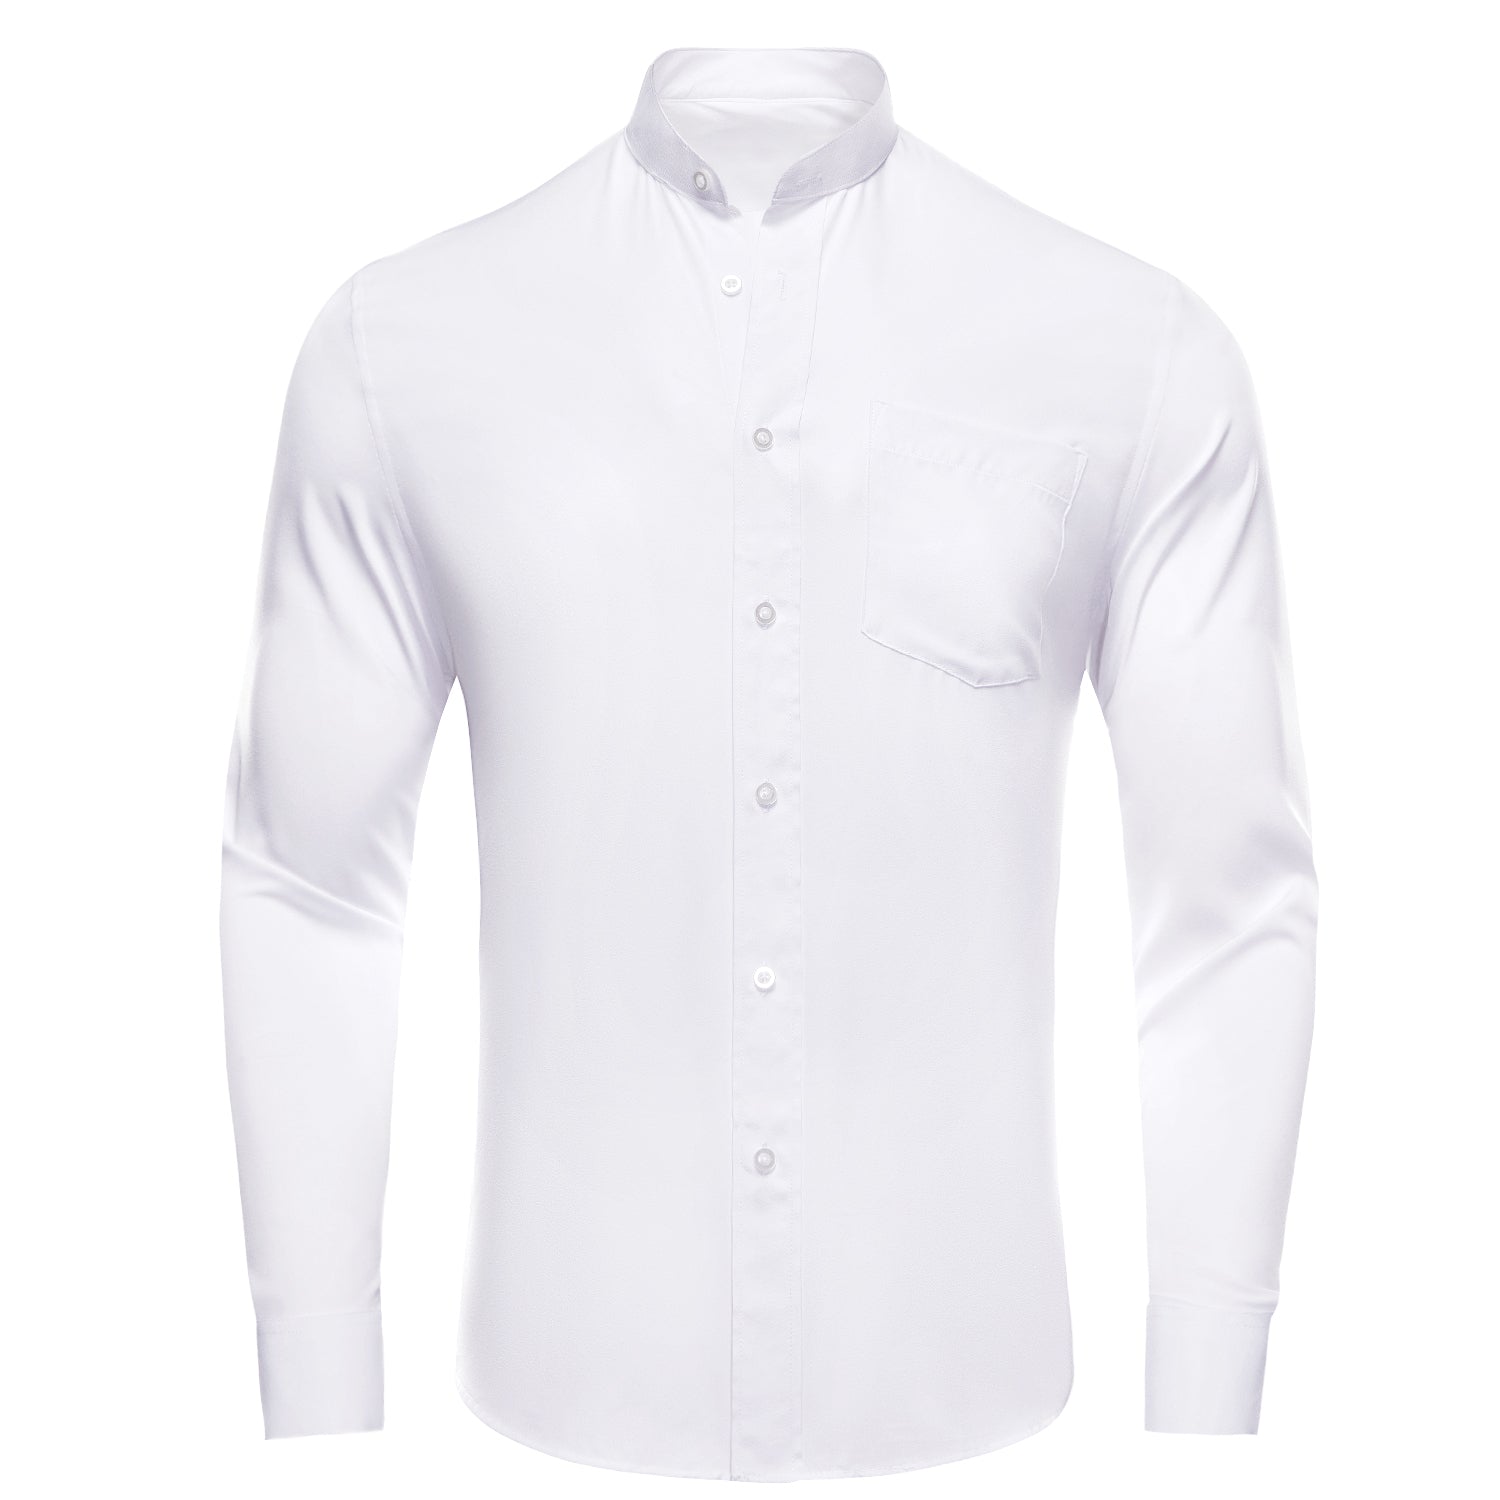 White Solid Men's Long Sleeve Dress Shirt